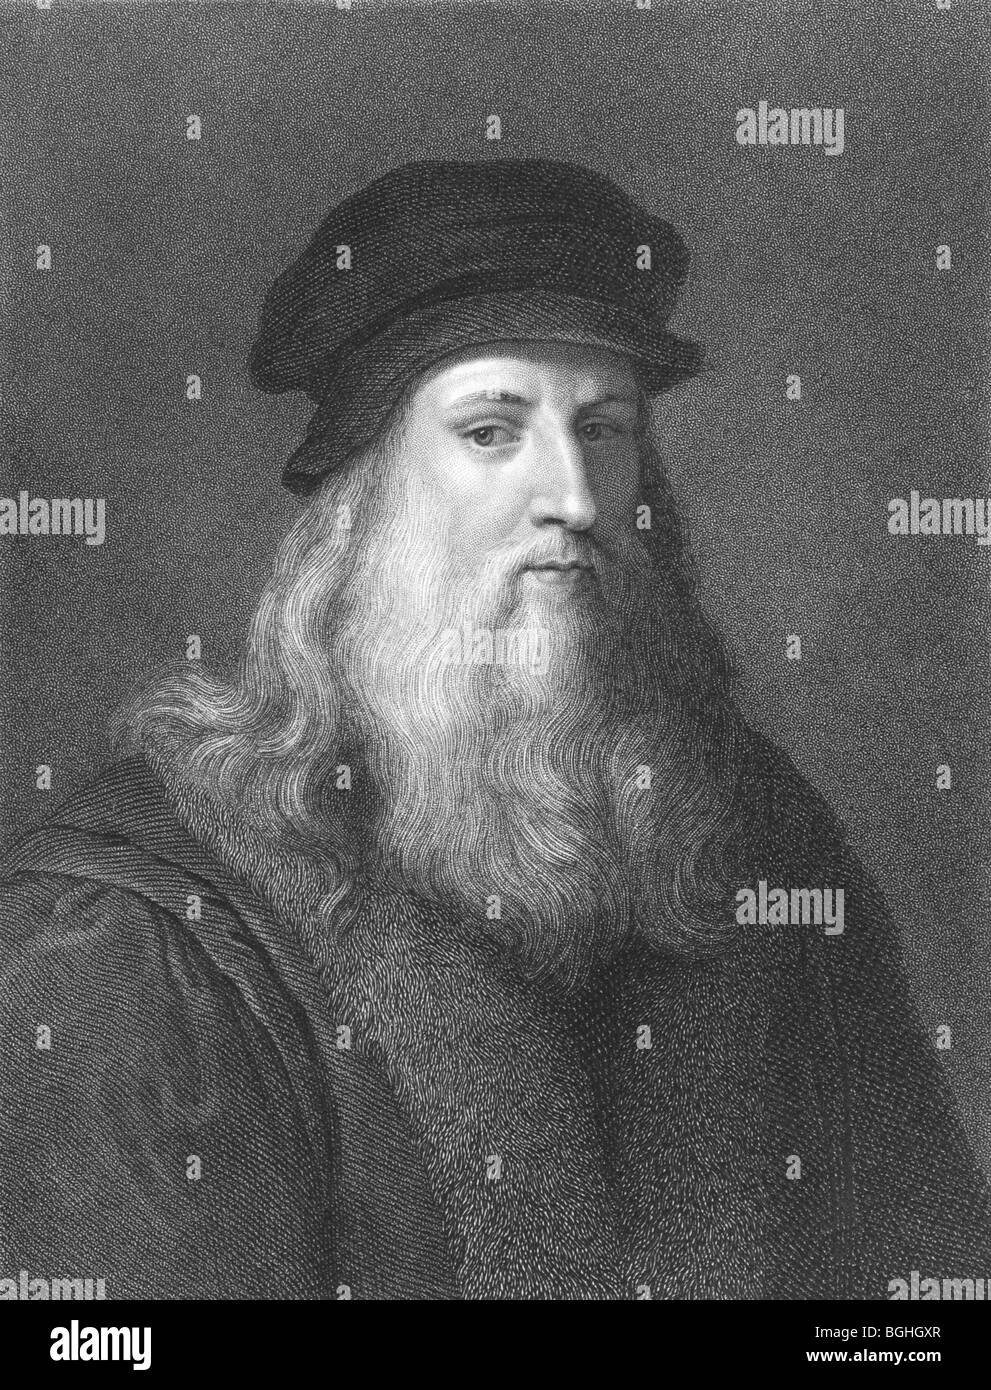 Leonardo Da Vinci sur gravure à partir des années 1850. Peut-être le plus talentueux diversement personne à avoir vécu. Banque D'Images